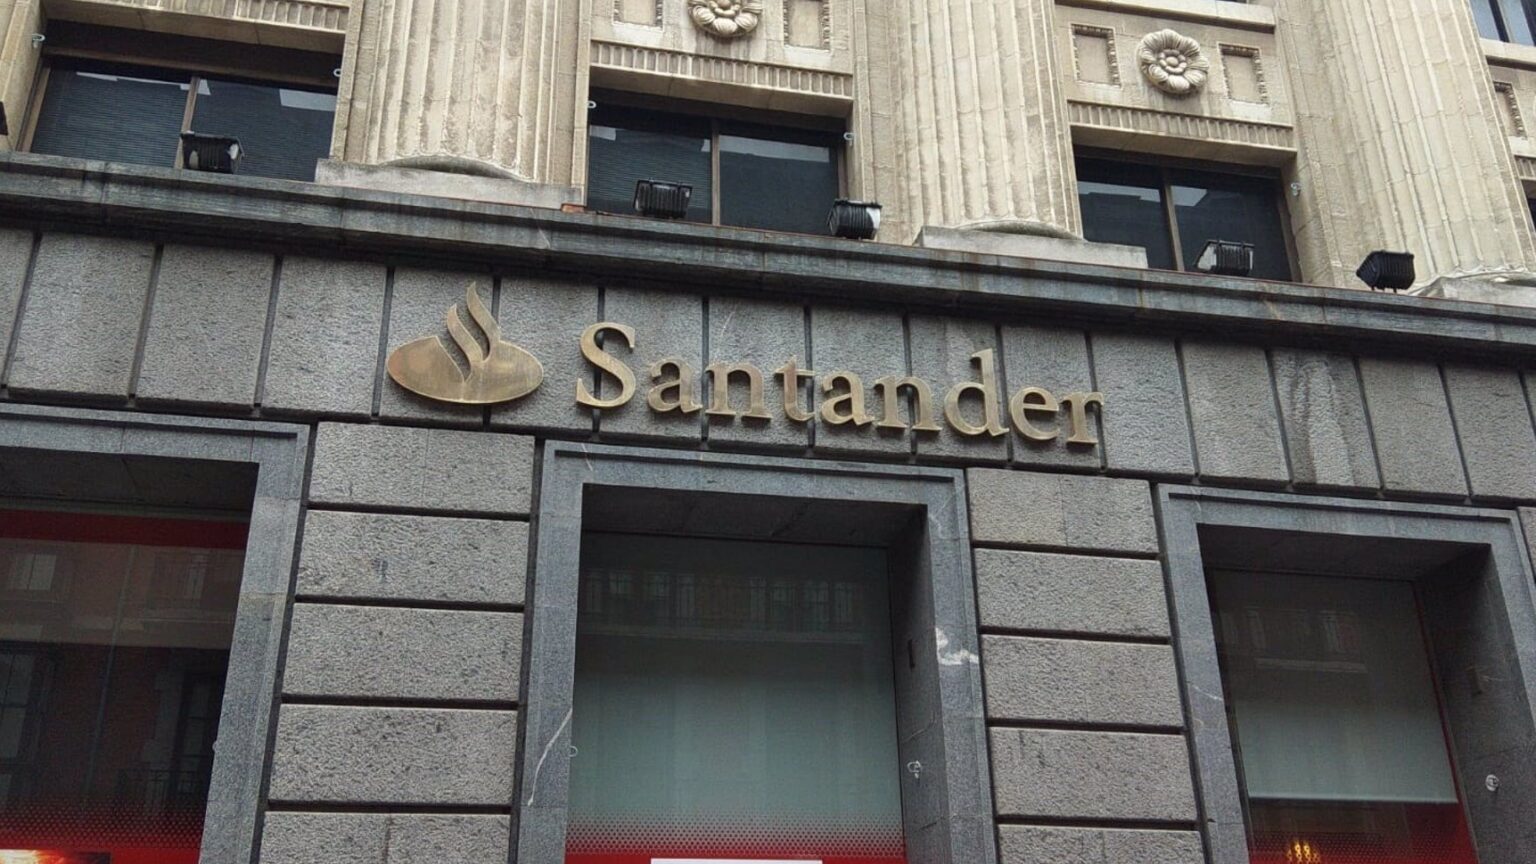 Banco Santander contratará a 300 empleados en Madrid y Barcelona